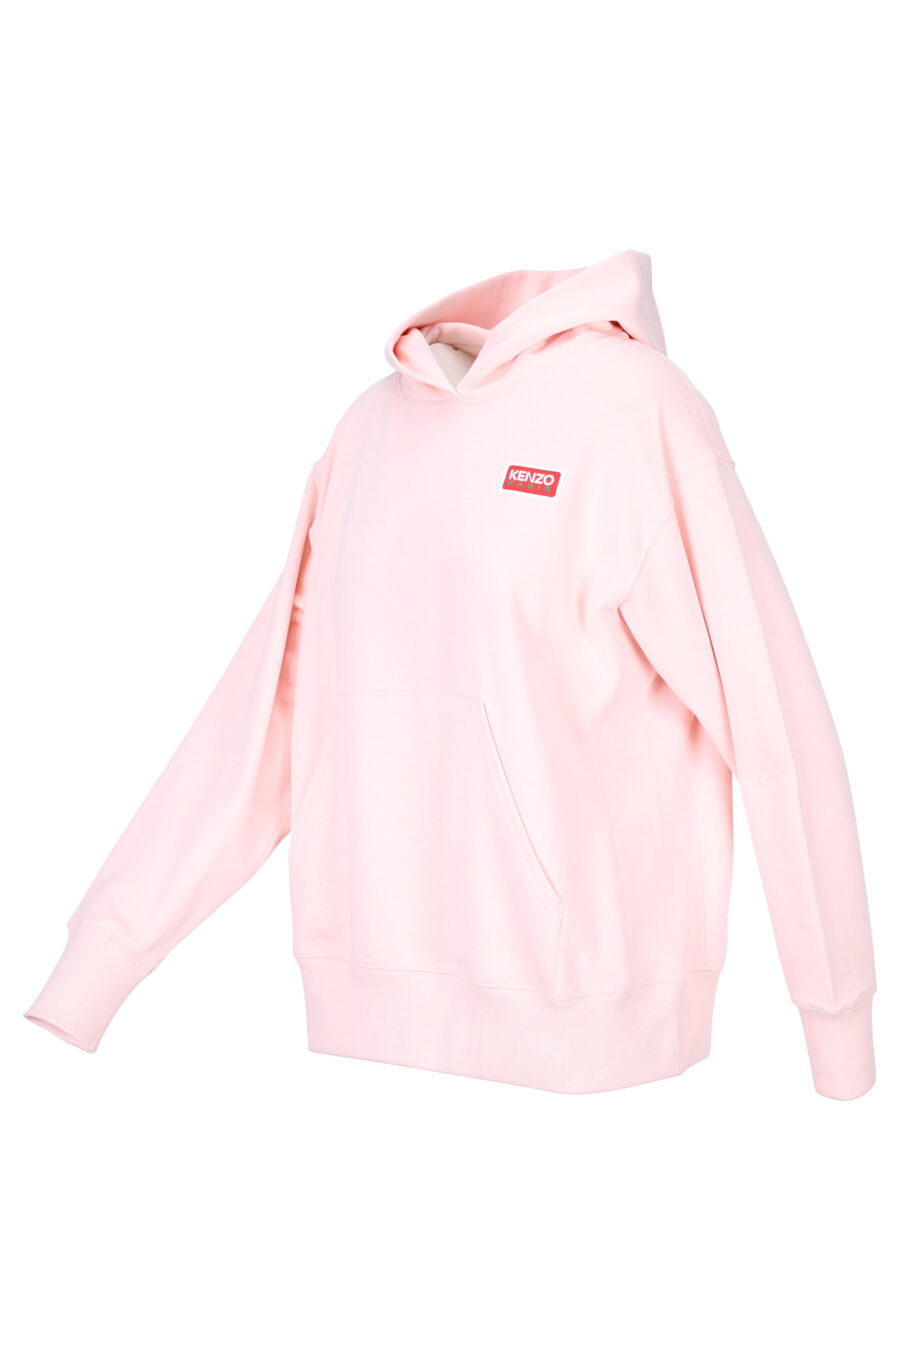 Sudadera "oversize" rosa con capucha y logo "kenzo paris" - 3612230515734 1